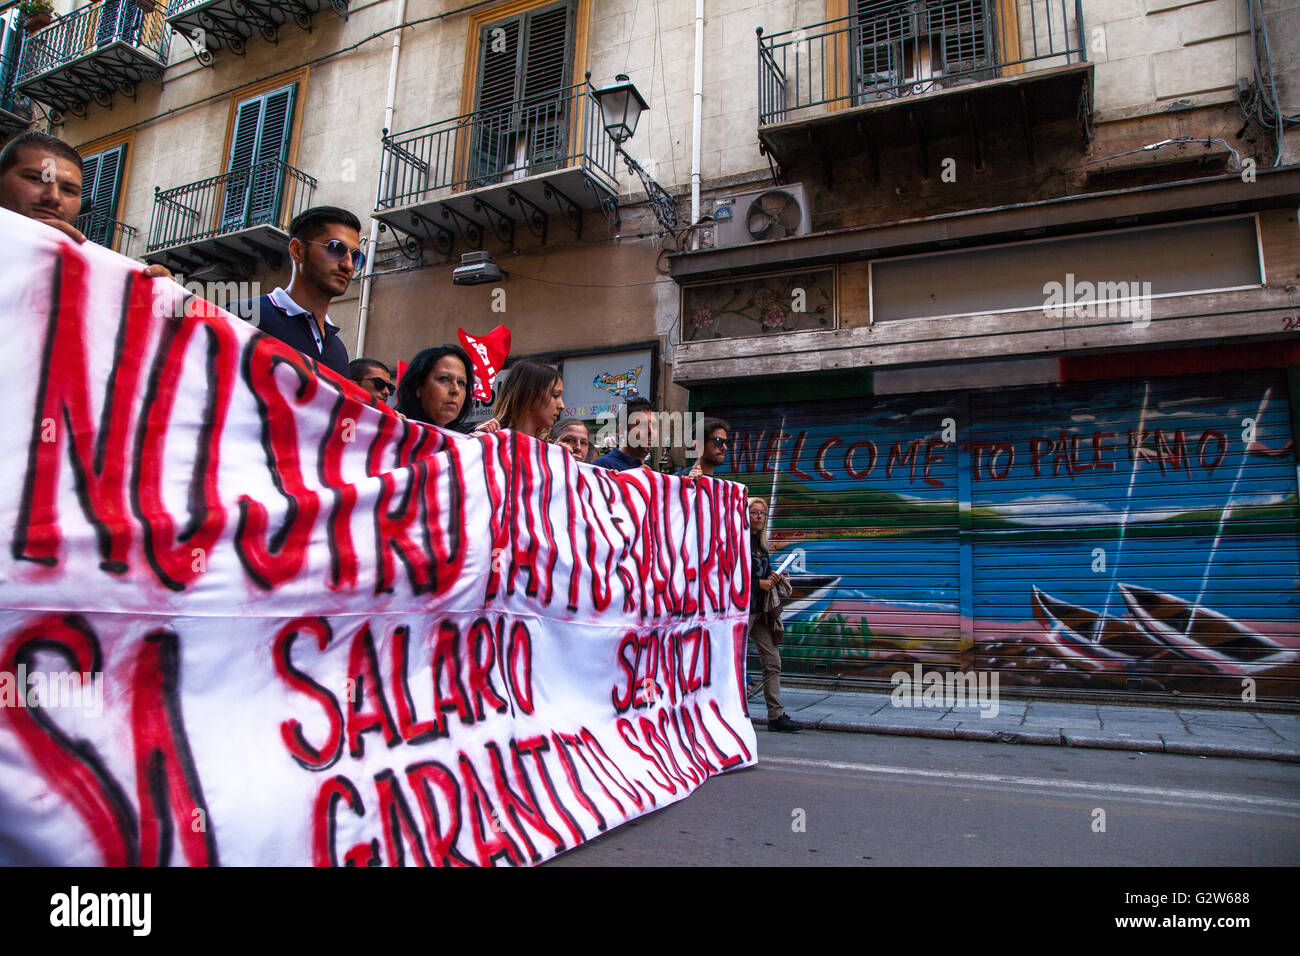 Un centinaio di studenti, i lavoratori temporanei e i senzatetto hanno manifestato contro il patto di Palermo firmato del Premier Matteo Renzi Foto Stock